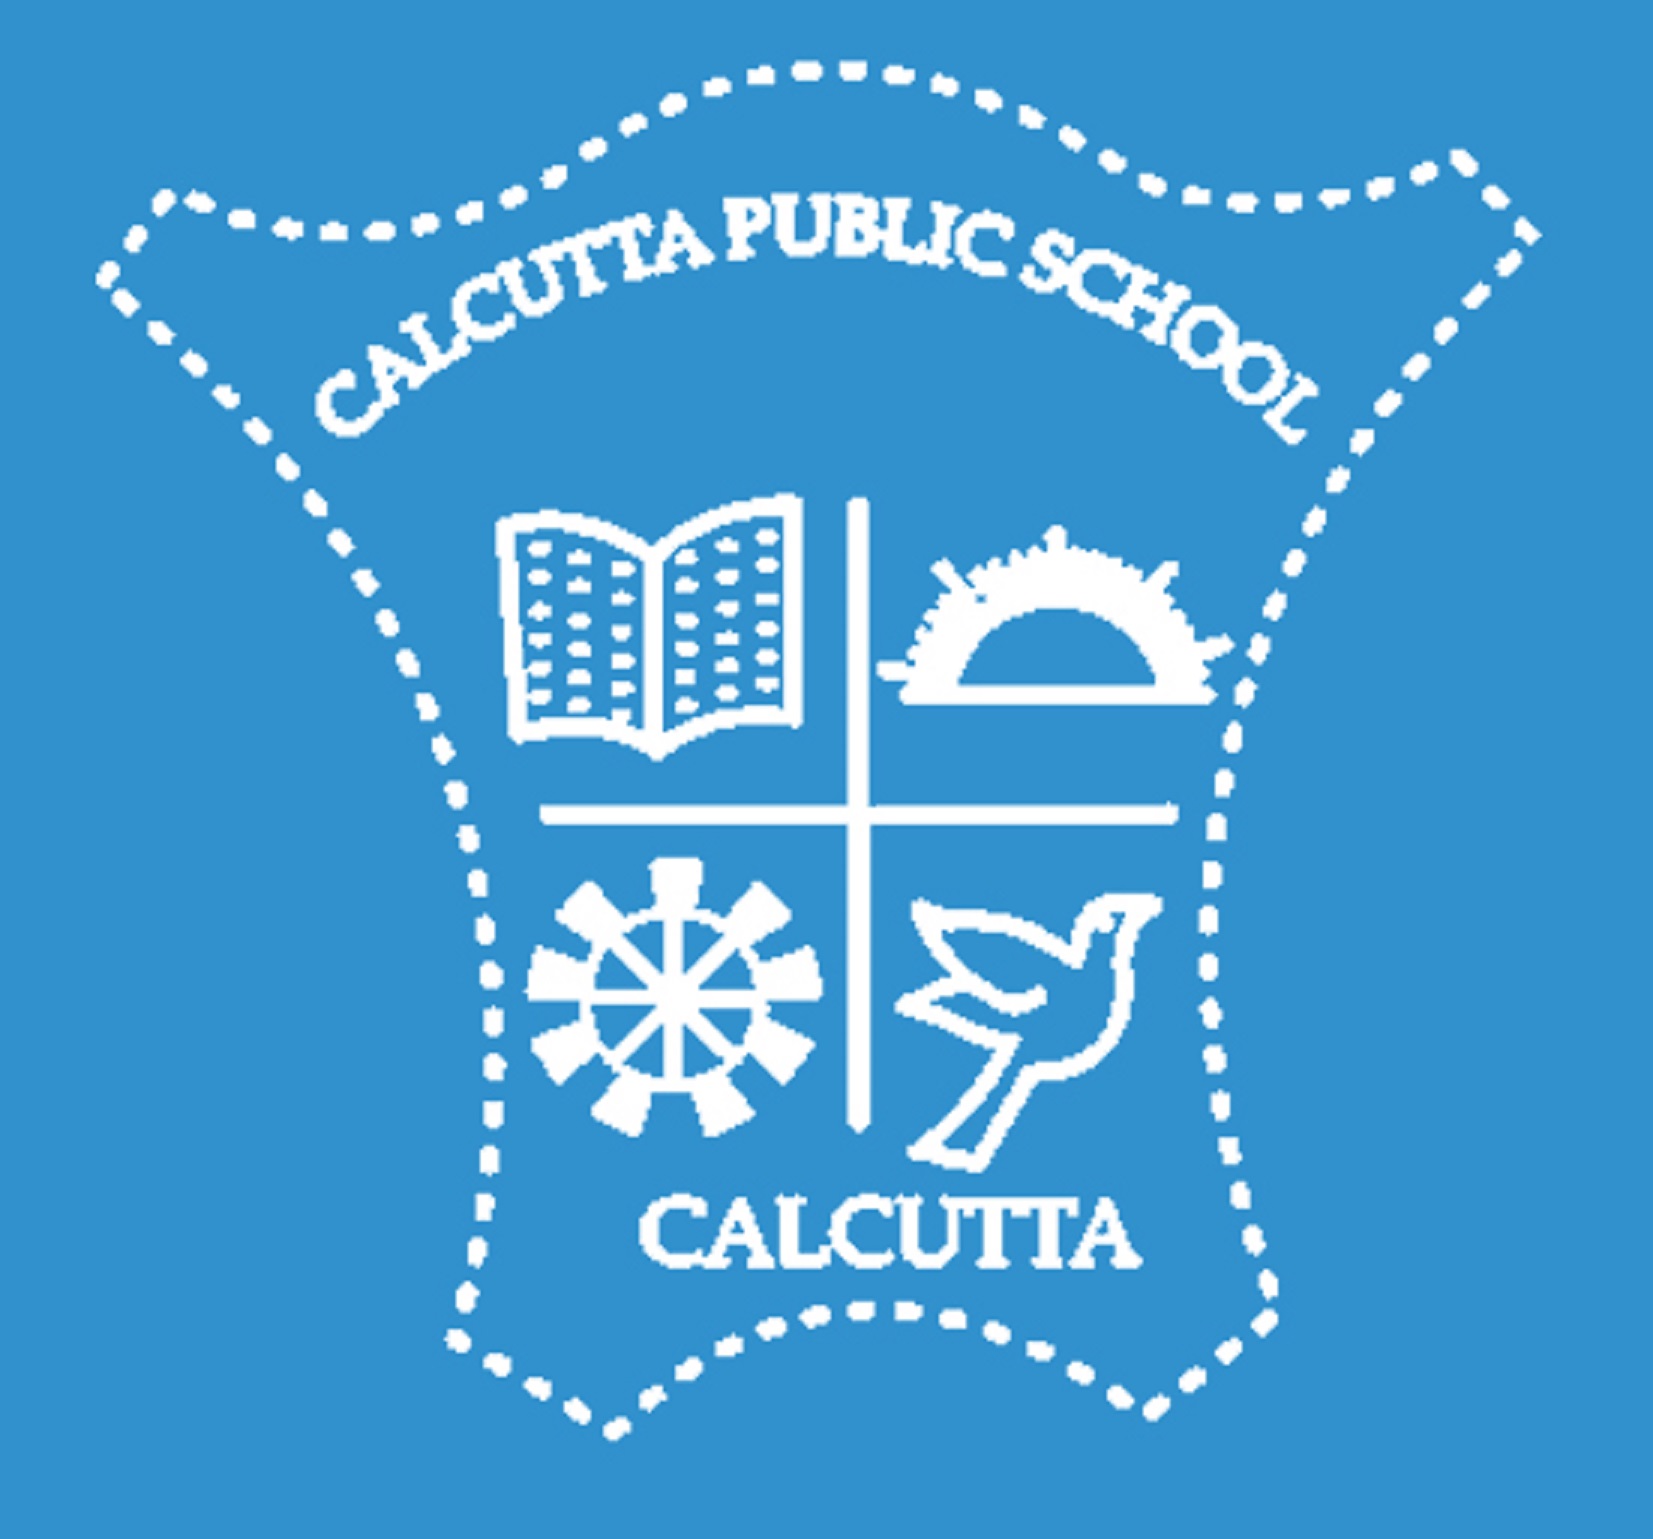 Calcutta Public School- https://schooldekho.org/Calcutta-Public-School-4535